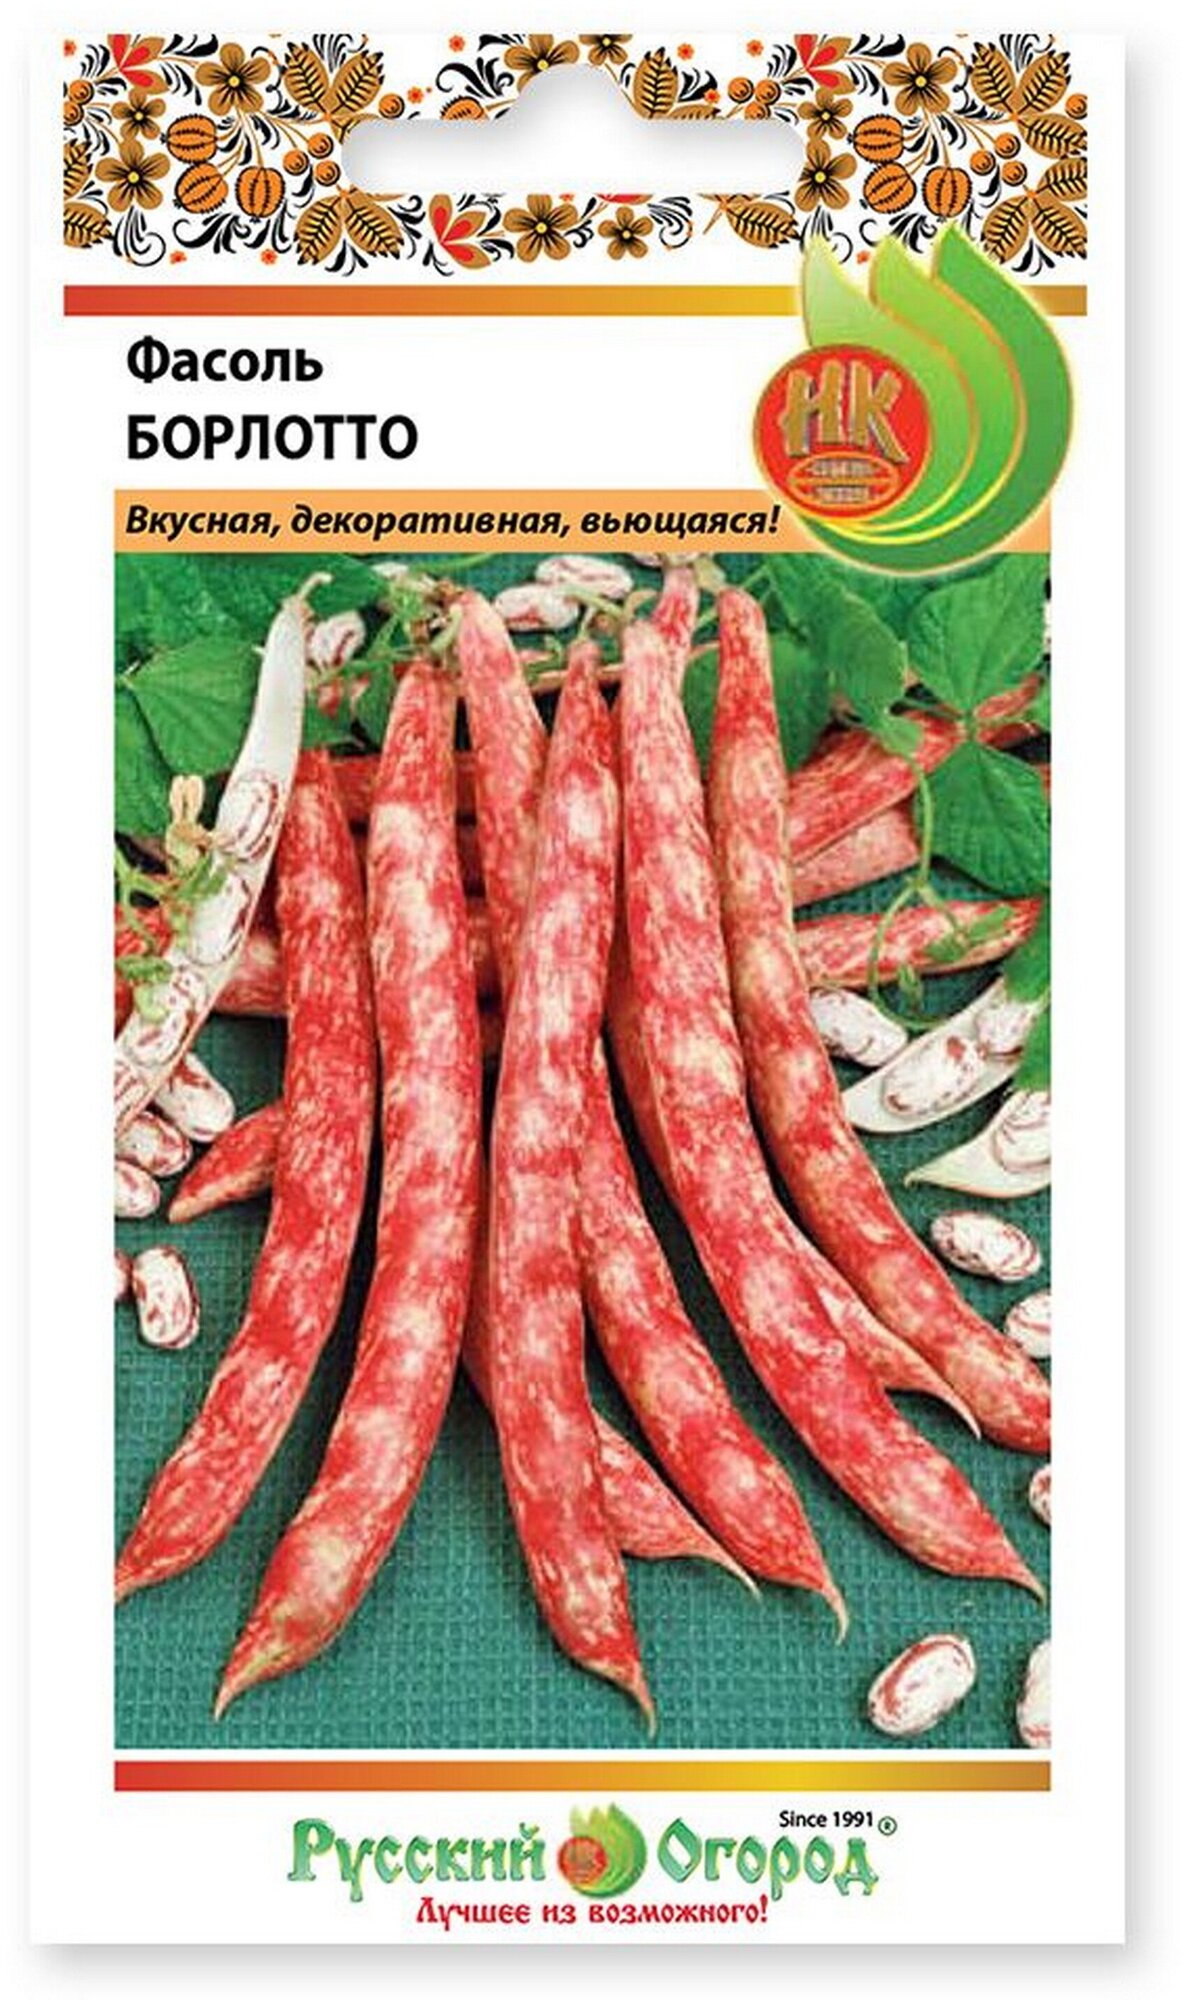 Семена Фасоль зерновая Борлотто 10 грамм семян Русский Огород